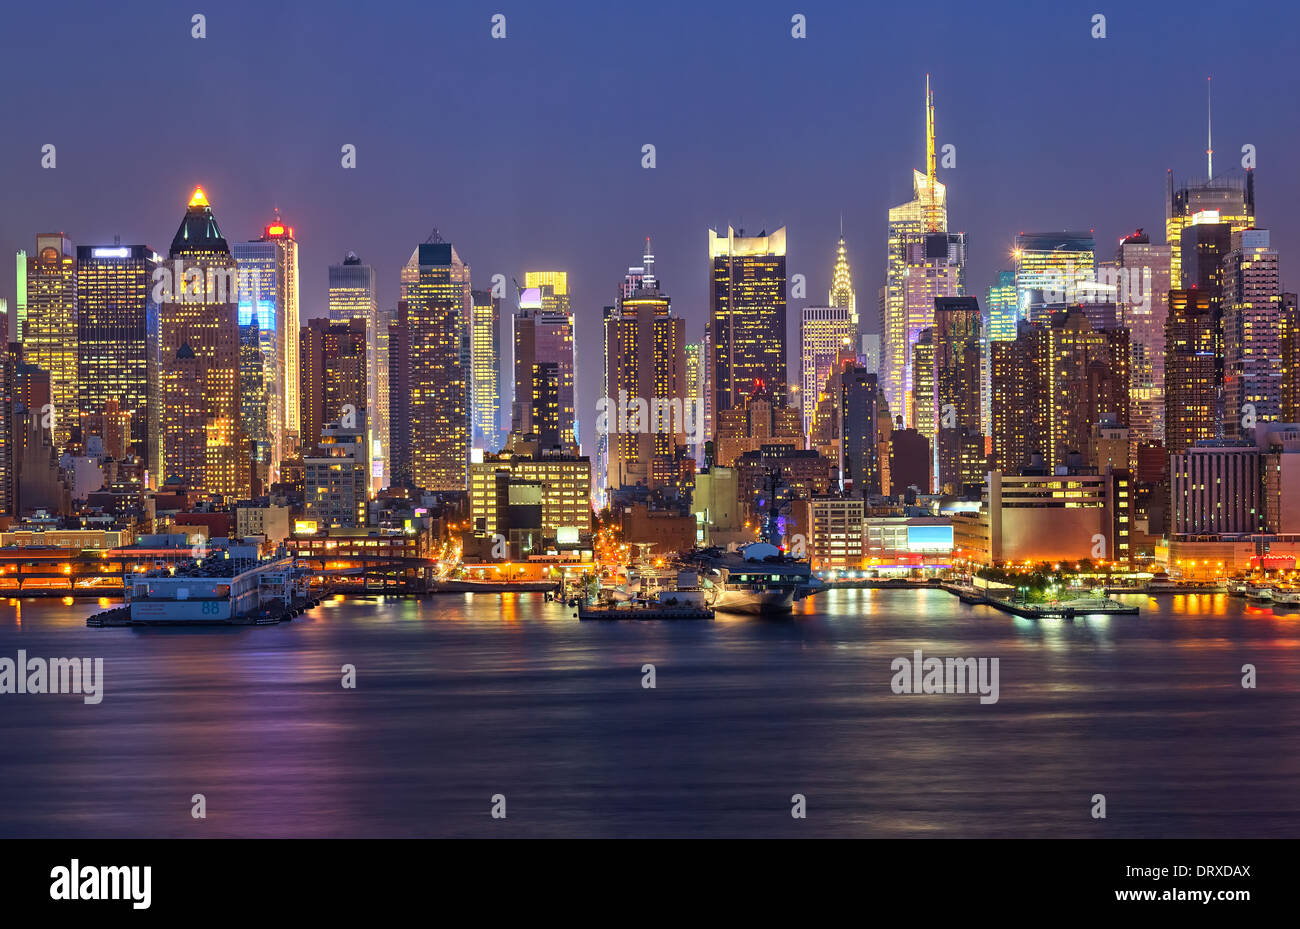 Manhattan at night Stock Photo